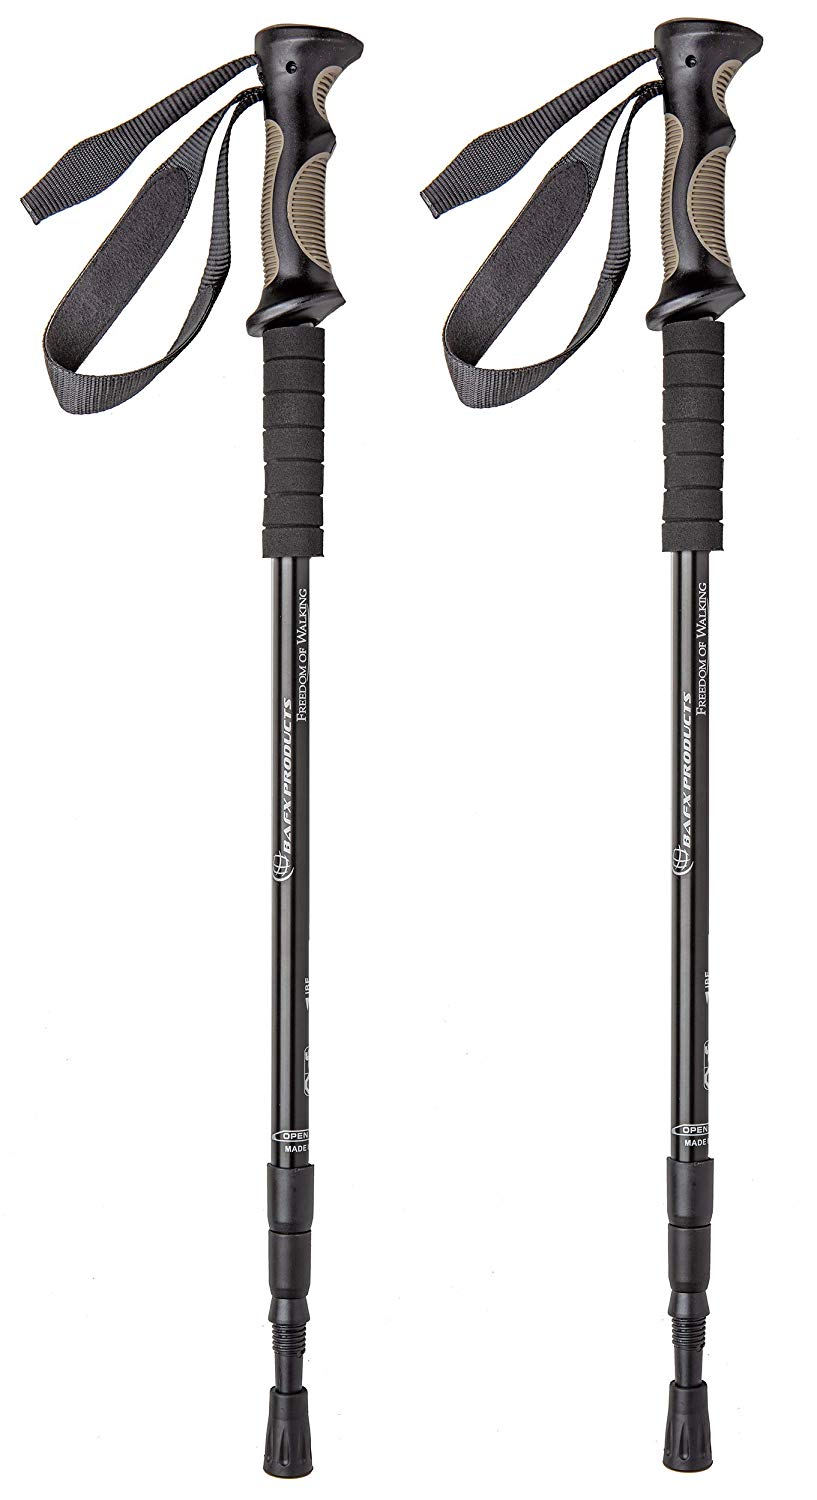 BAFX Products - 2 Pack - Adjustable Anti Shock Hiking:Walking:Trekking Poles